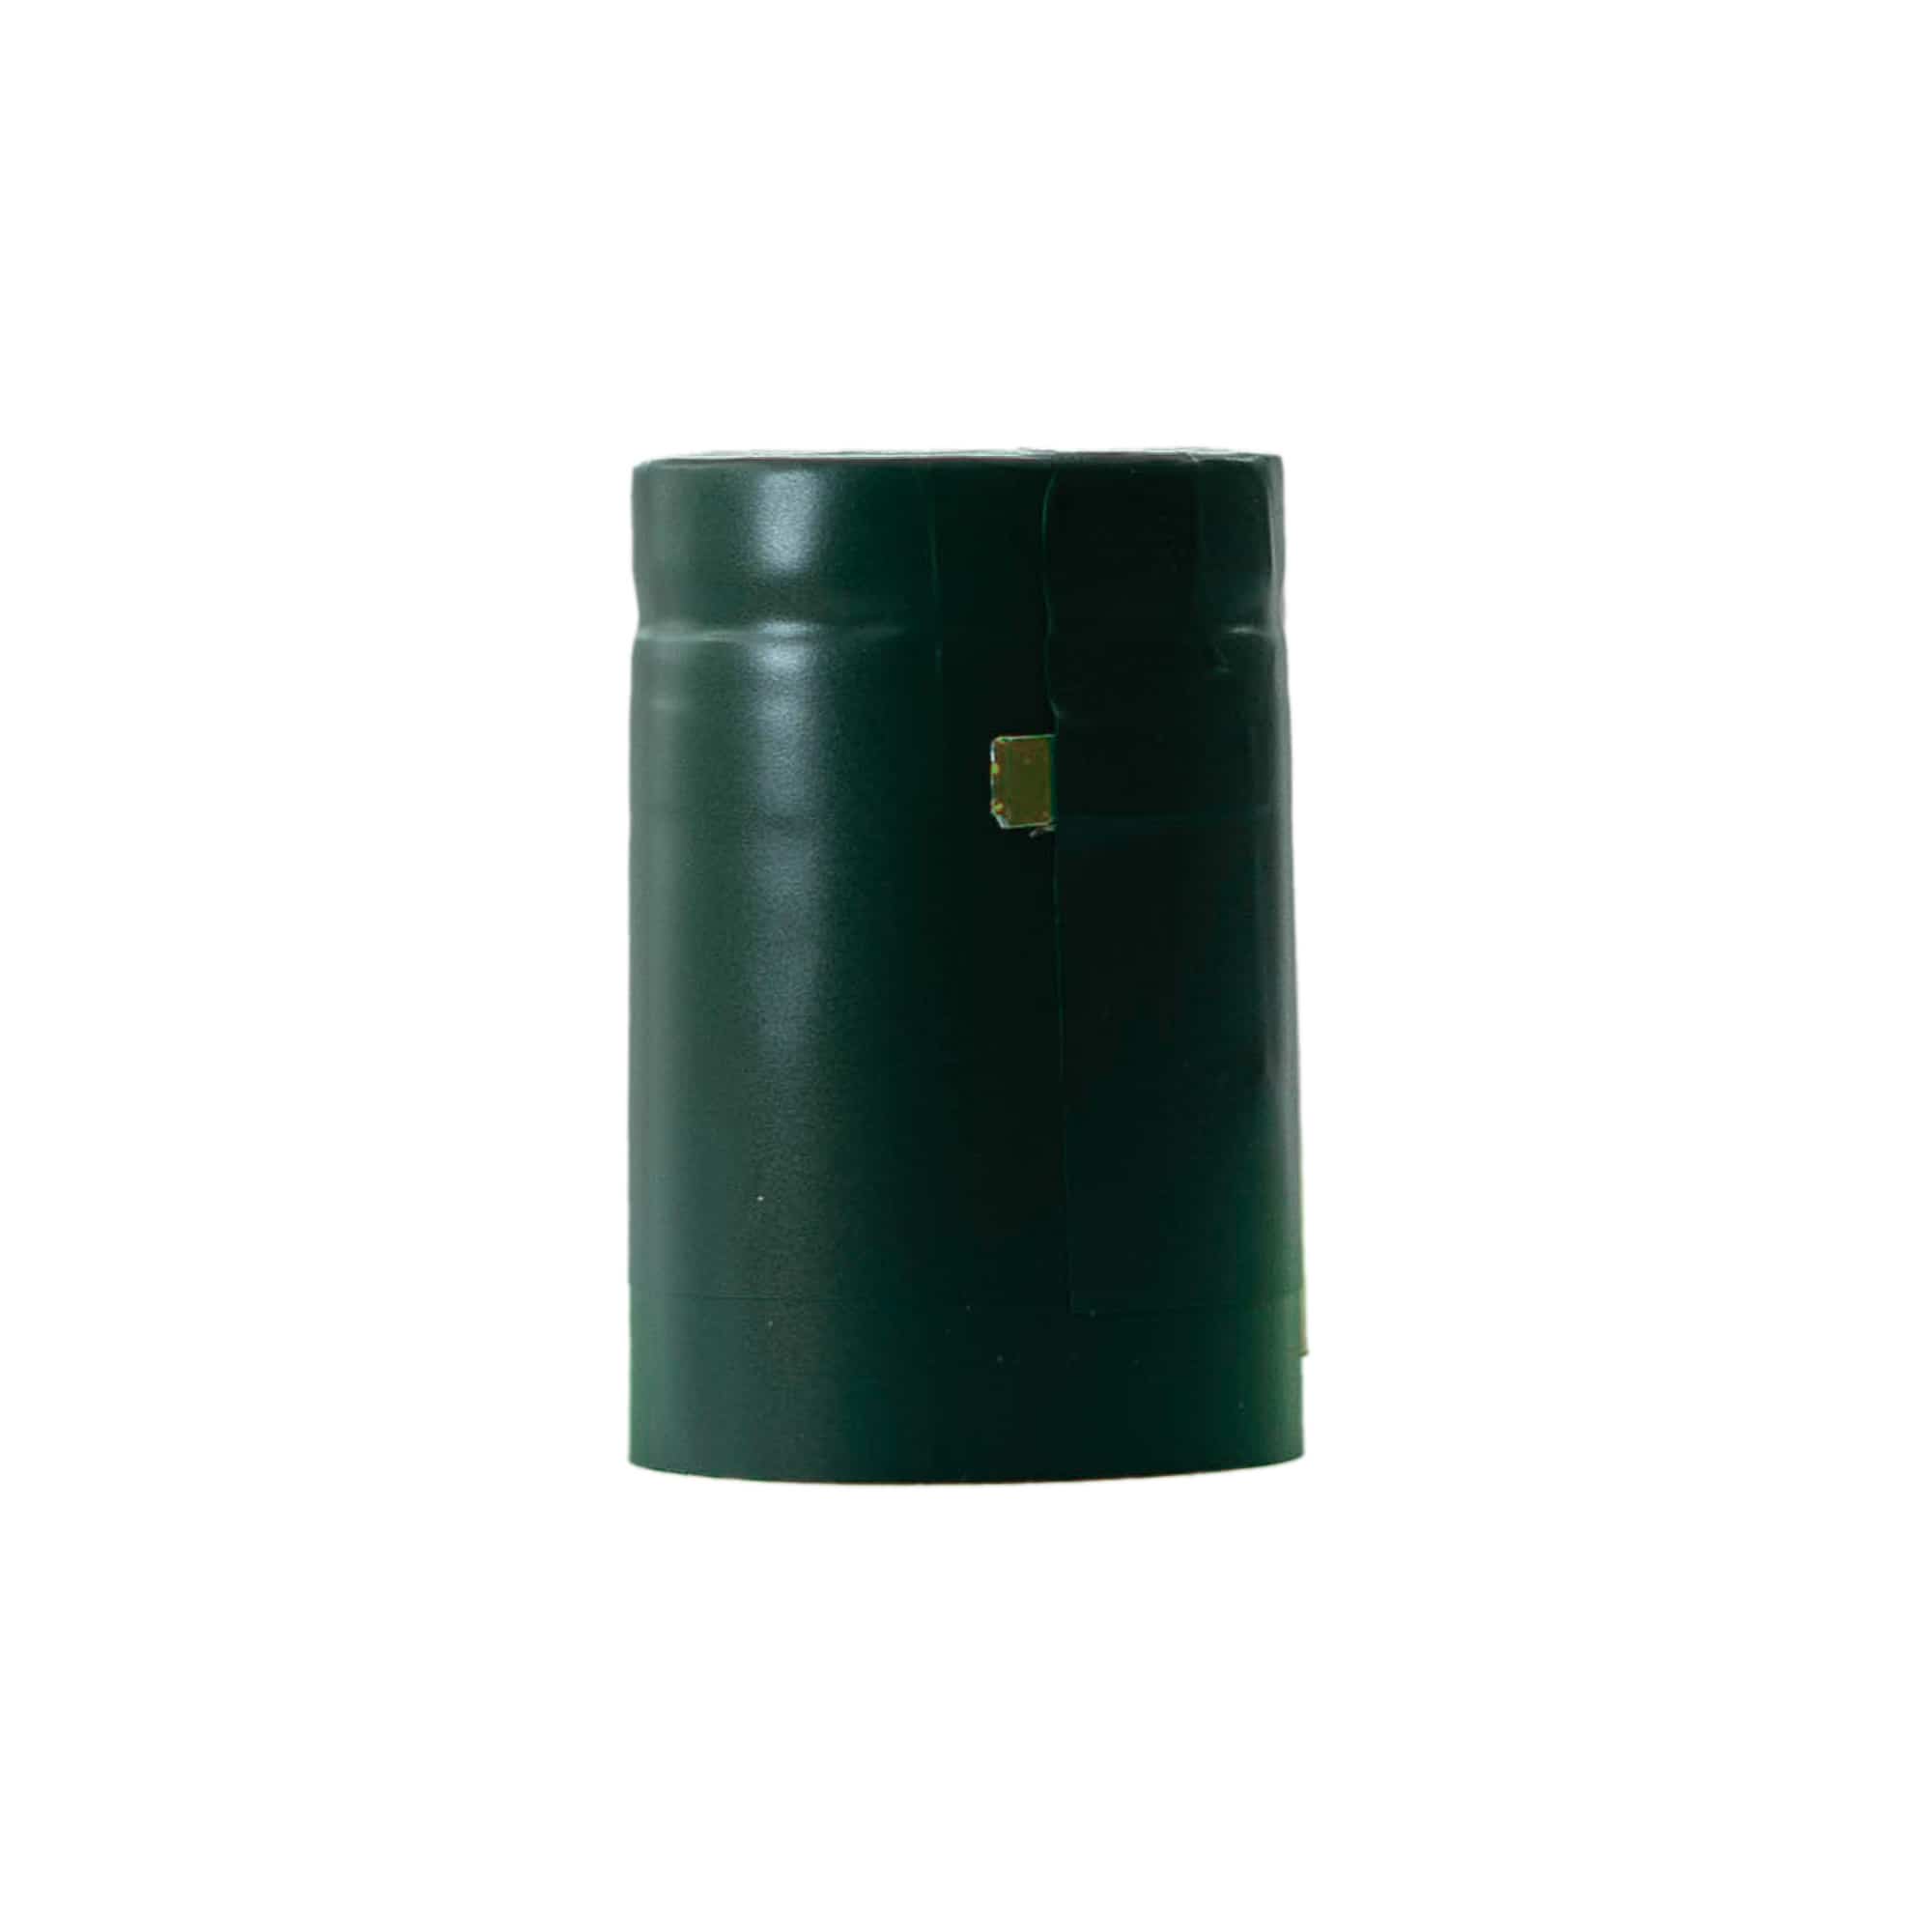 Kapturek termokurczliwy 32x41, tworzywo sztuczne PVC, kolor szmaragdowo-zielony